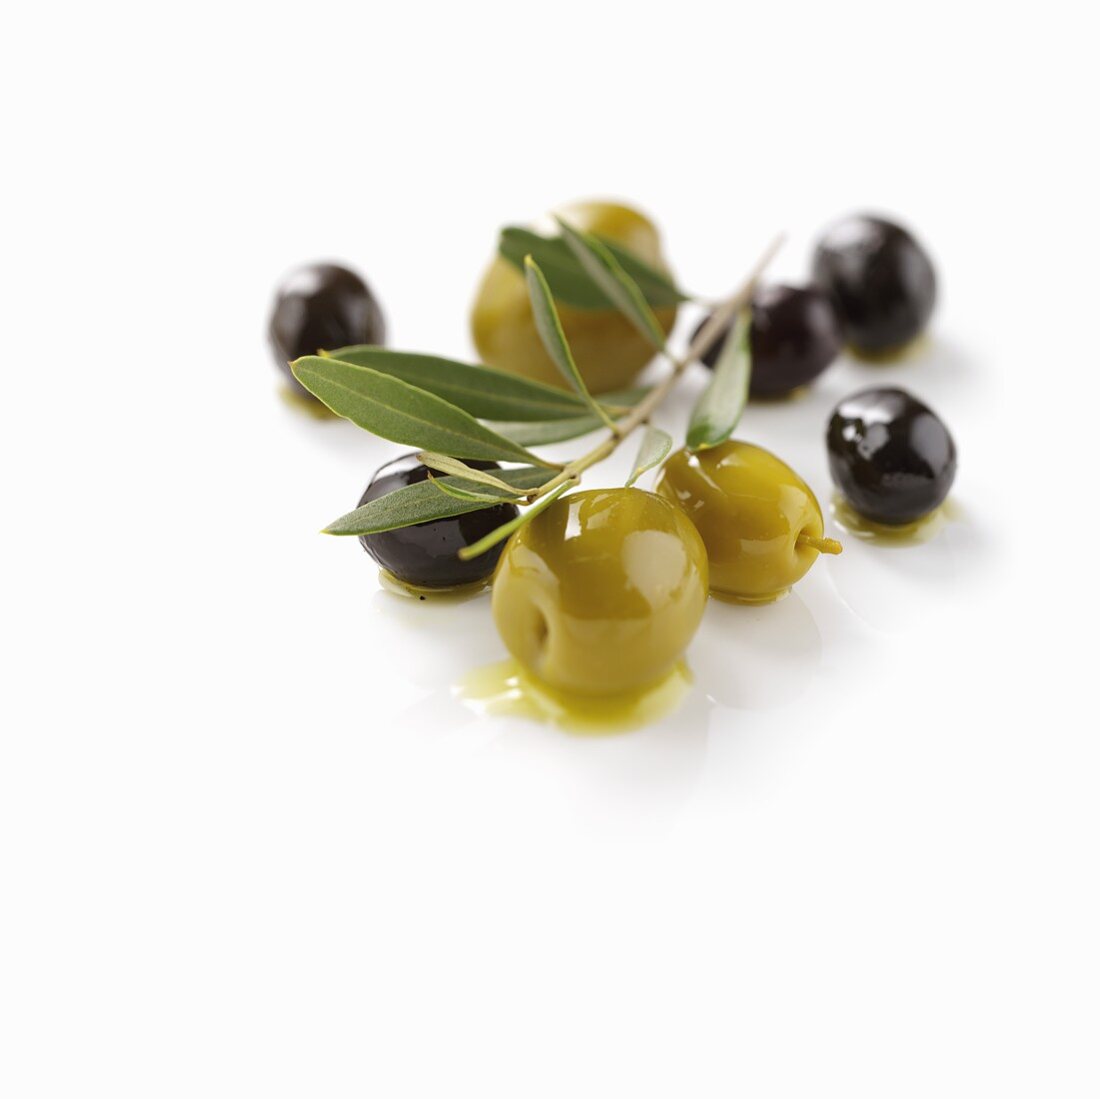 Grüne und schwarze Oliven und Olivenzweig